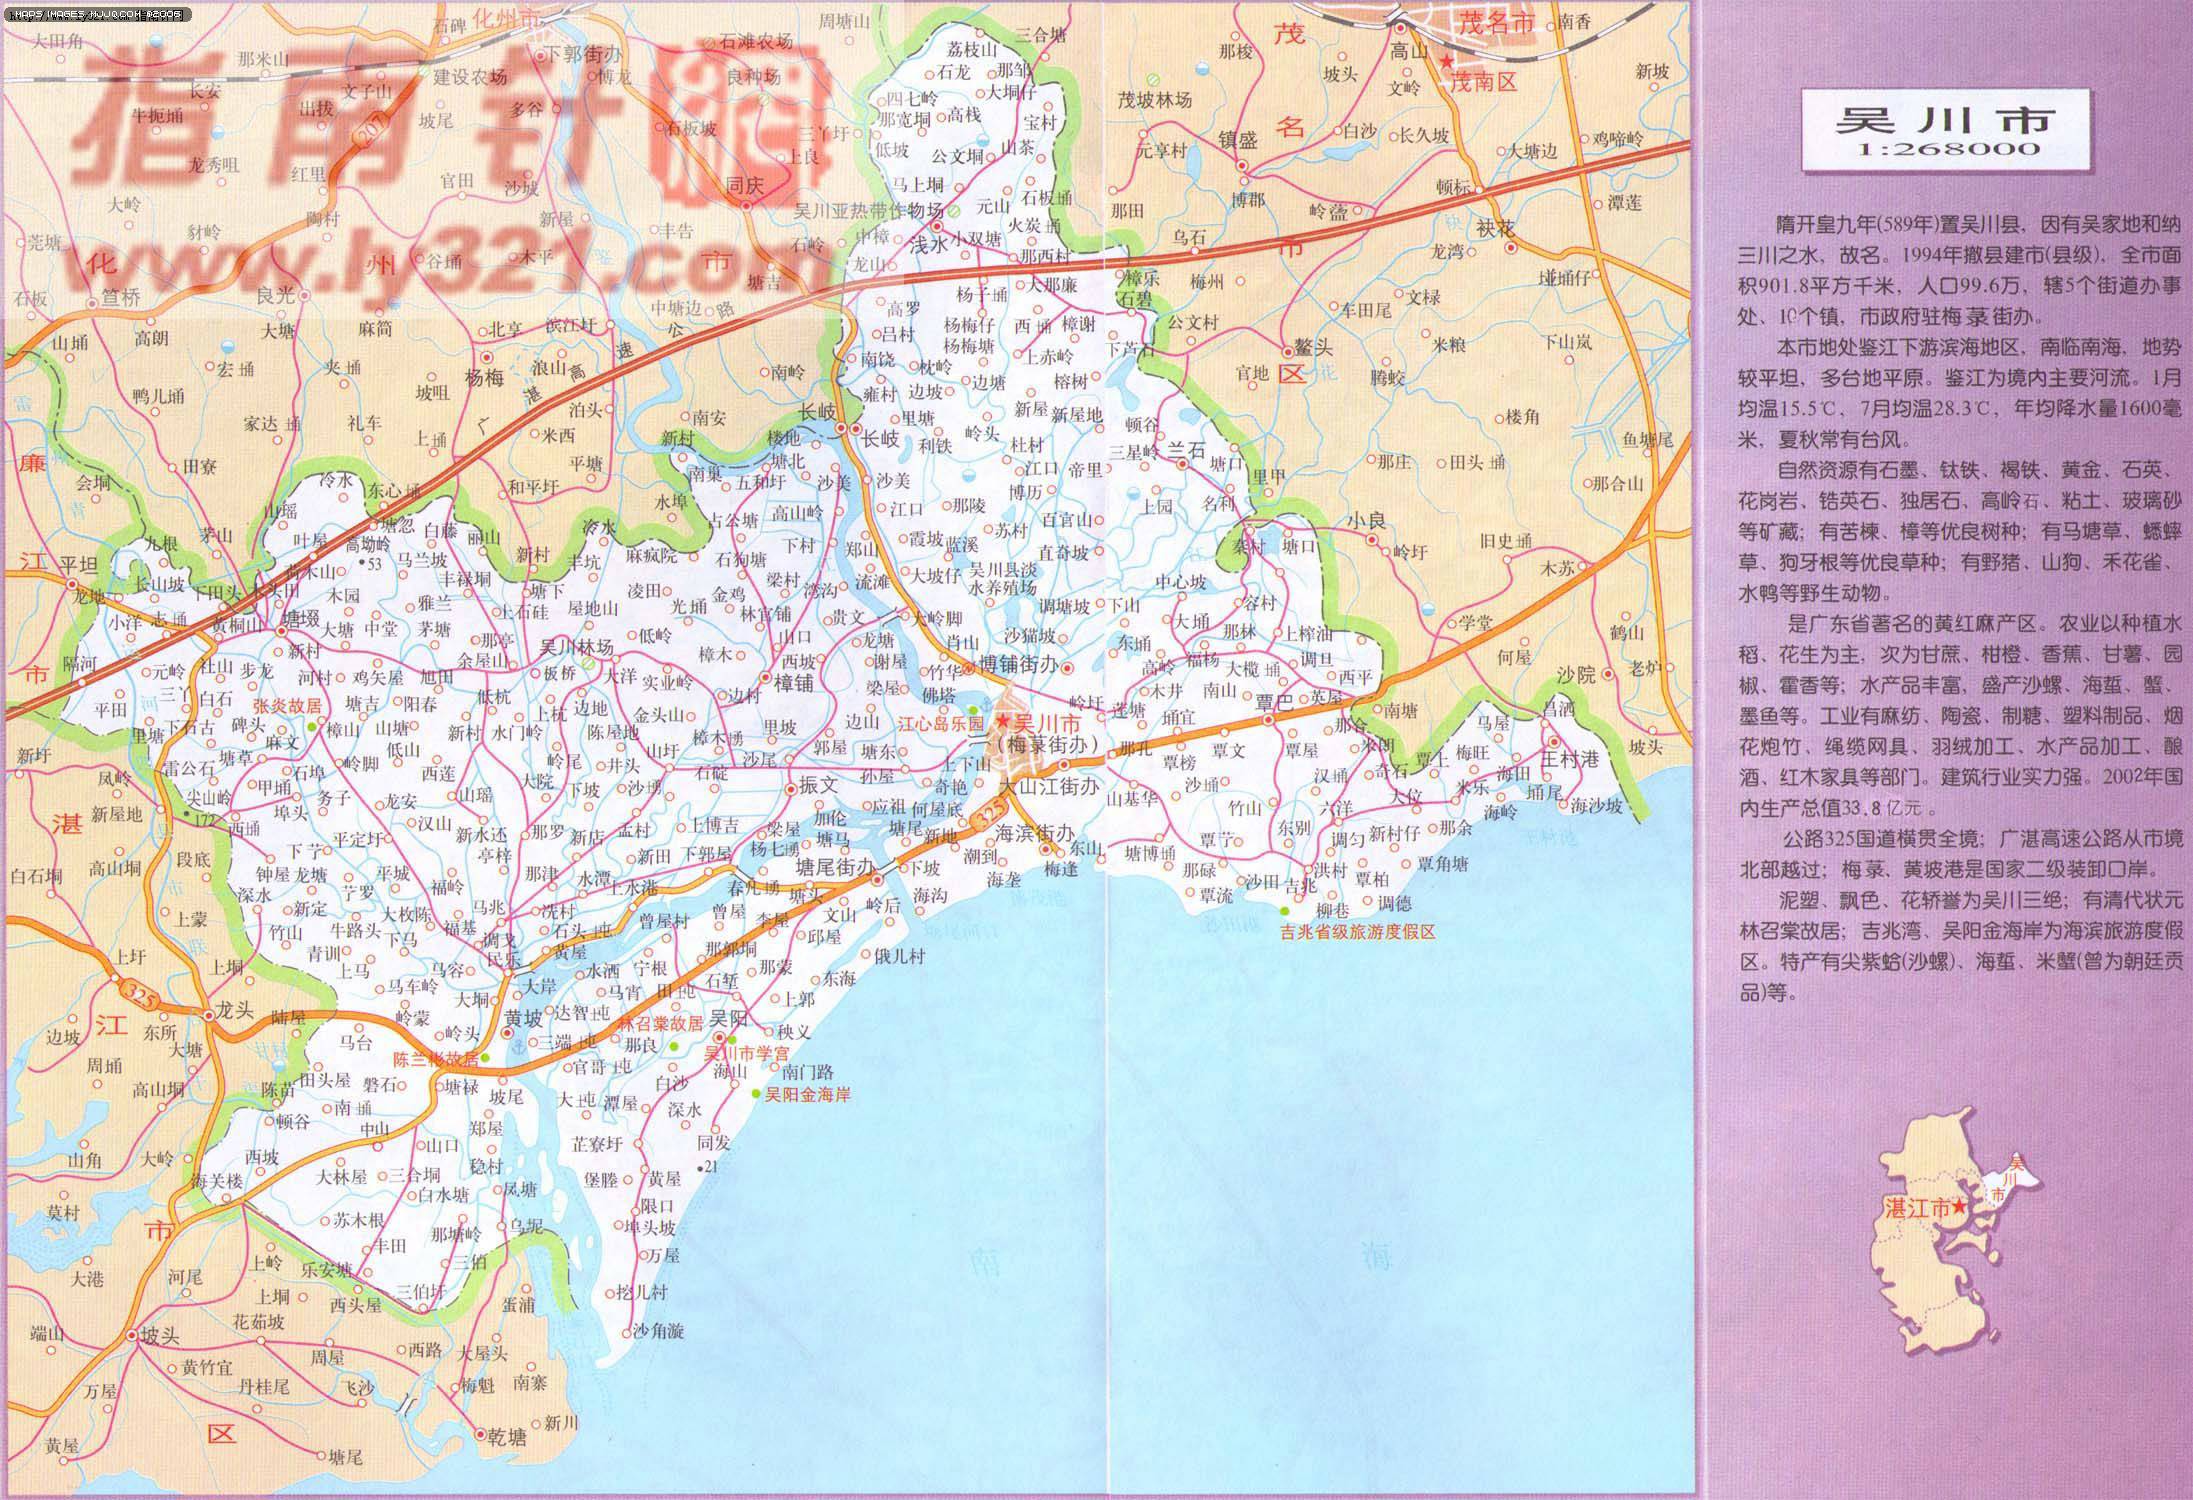 地图 广东 湛江 地图 广东 肇庆 地图 广东 潮州 地图图片